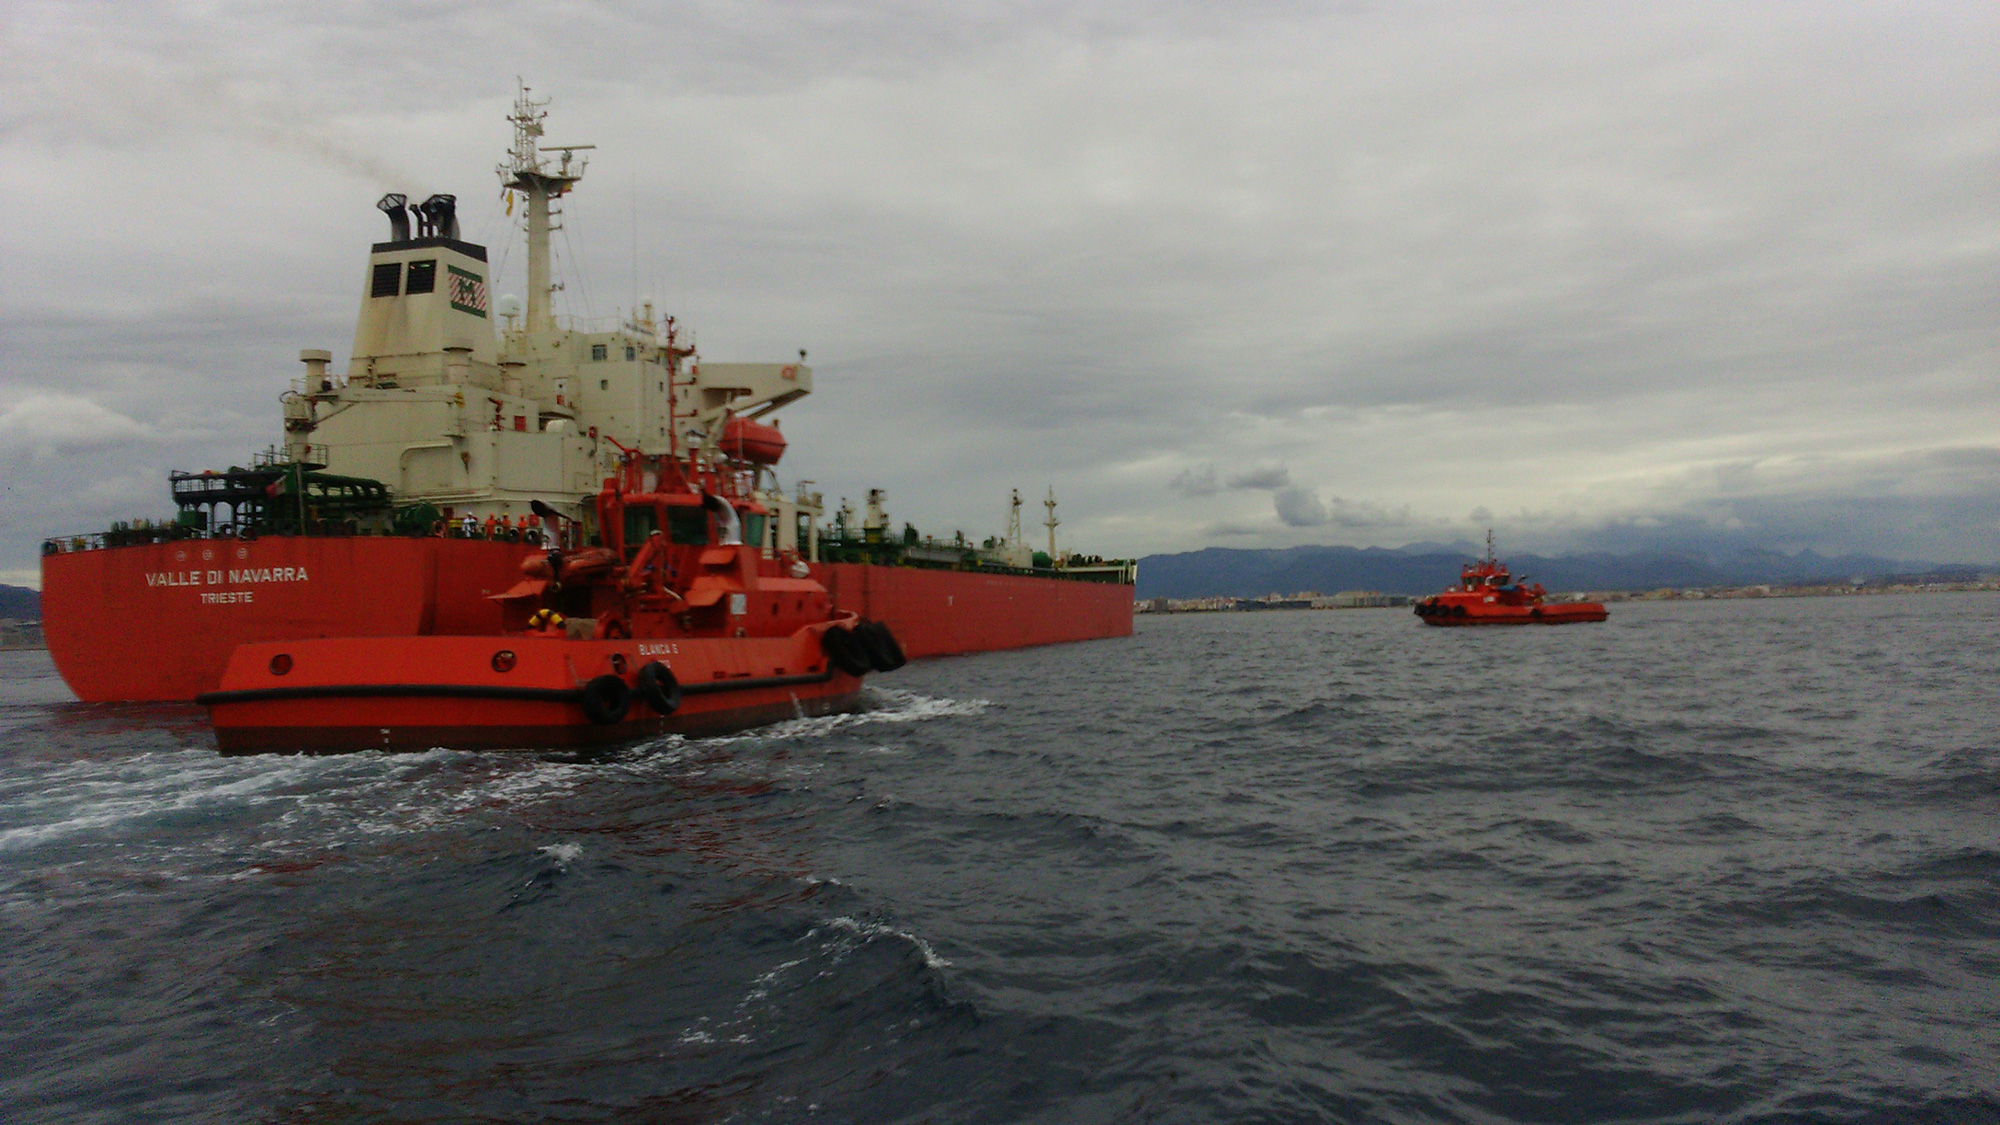 Dos remolcadores asistiendo al buque cisterna Valle Di Navarra en el Puerto de Palma de Mallorca